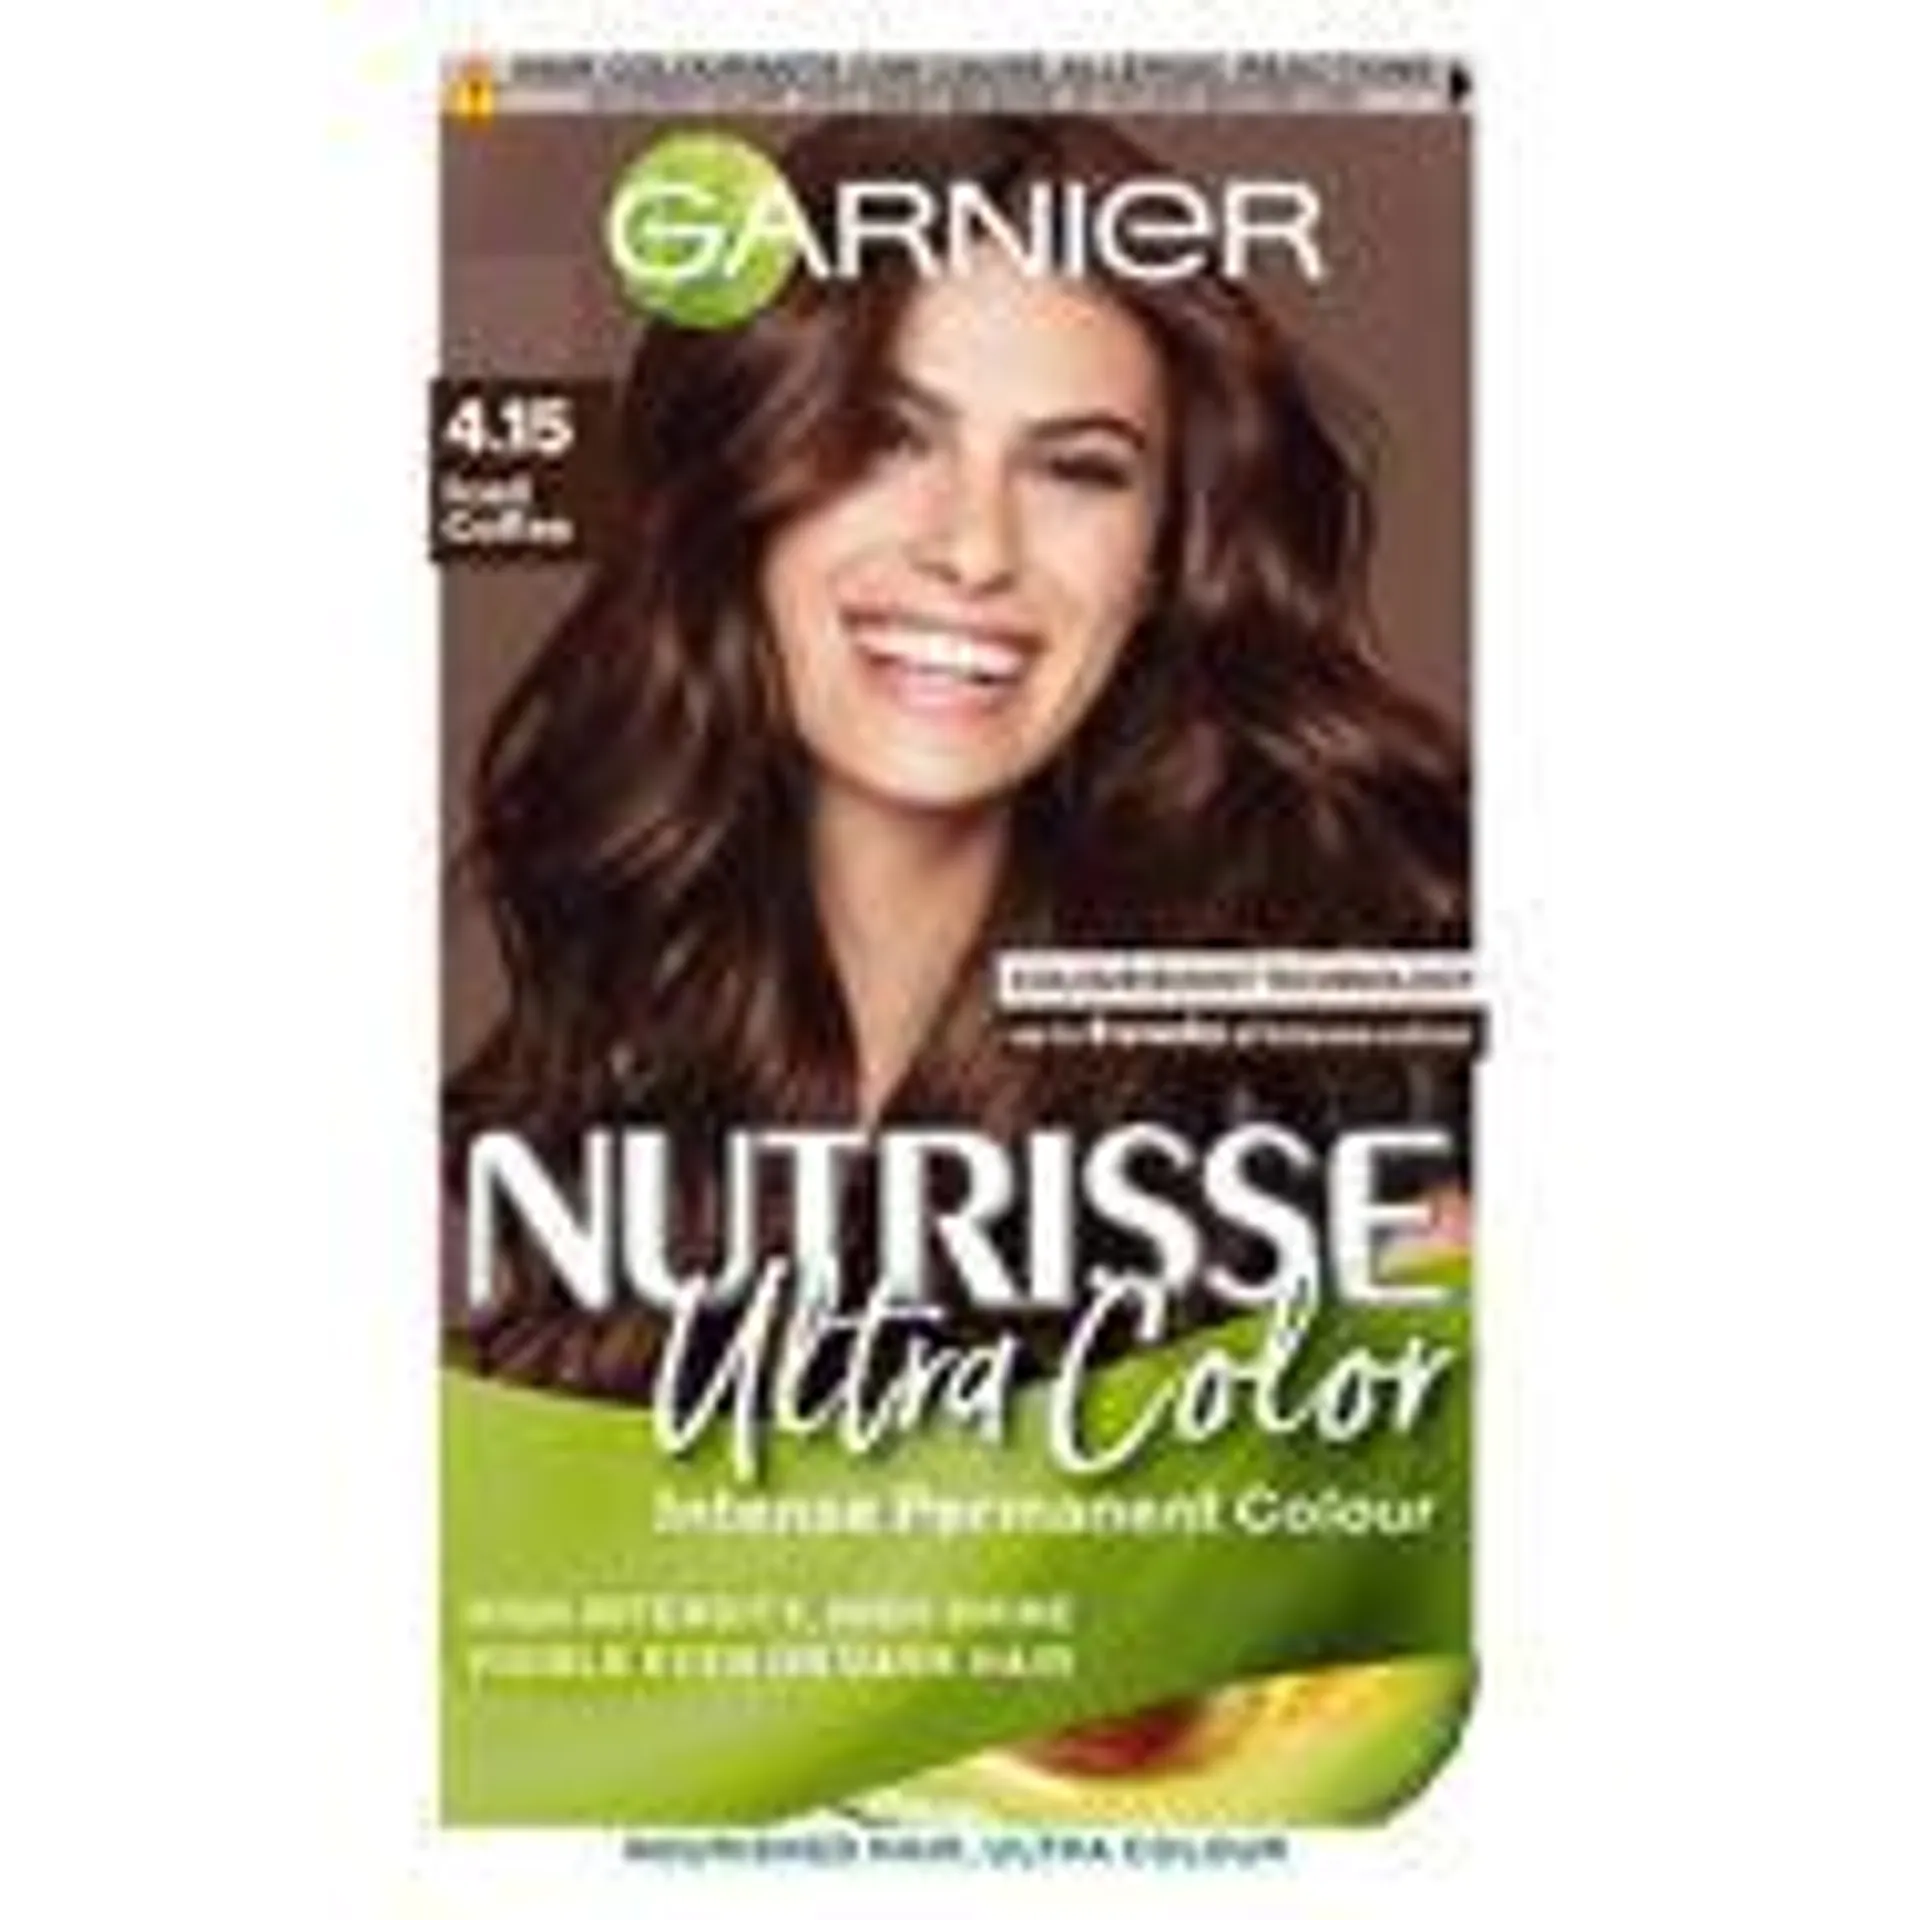 Garnier Nutrisse 4.15 Iced Coffee Brown Permanent Hair Dye